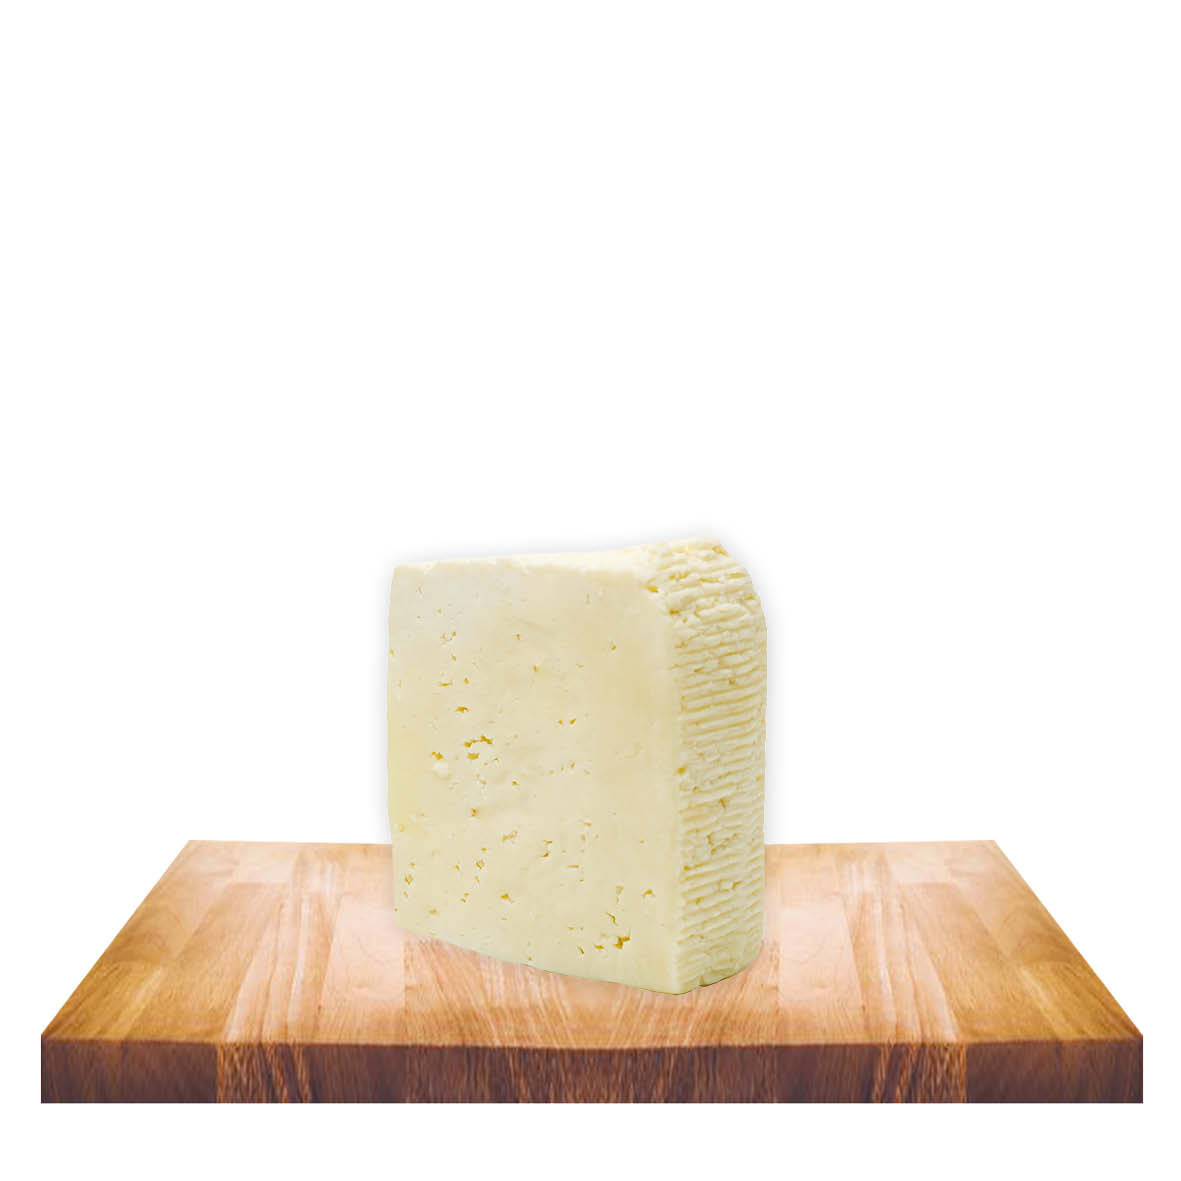 Tuma cheese